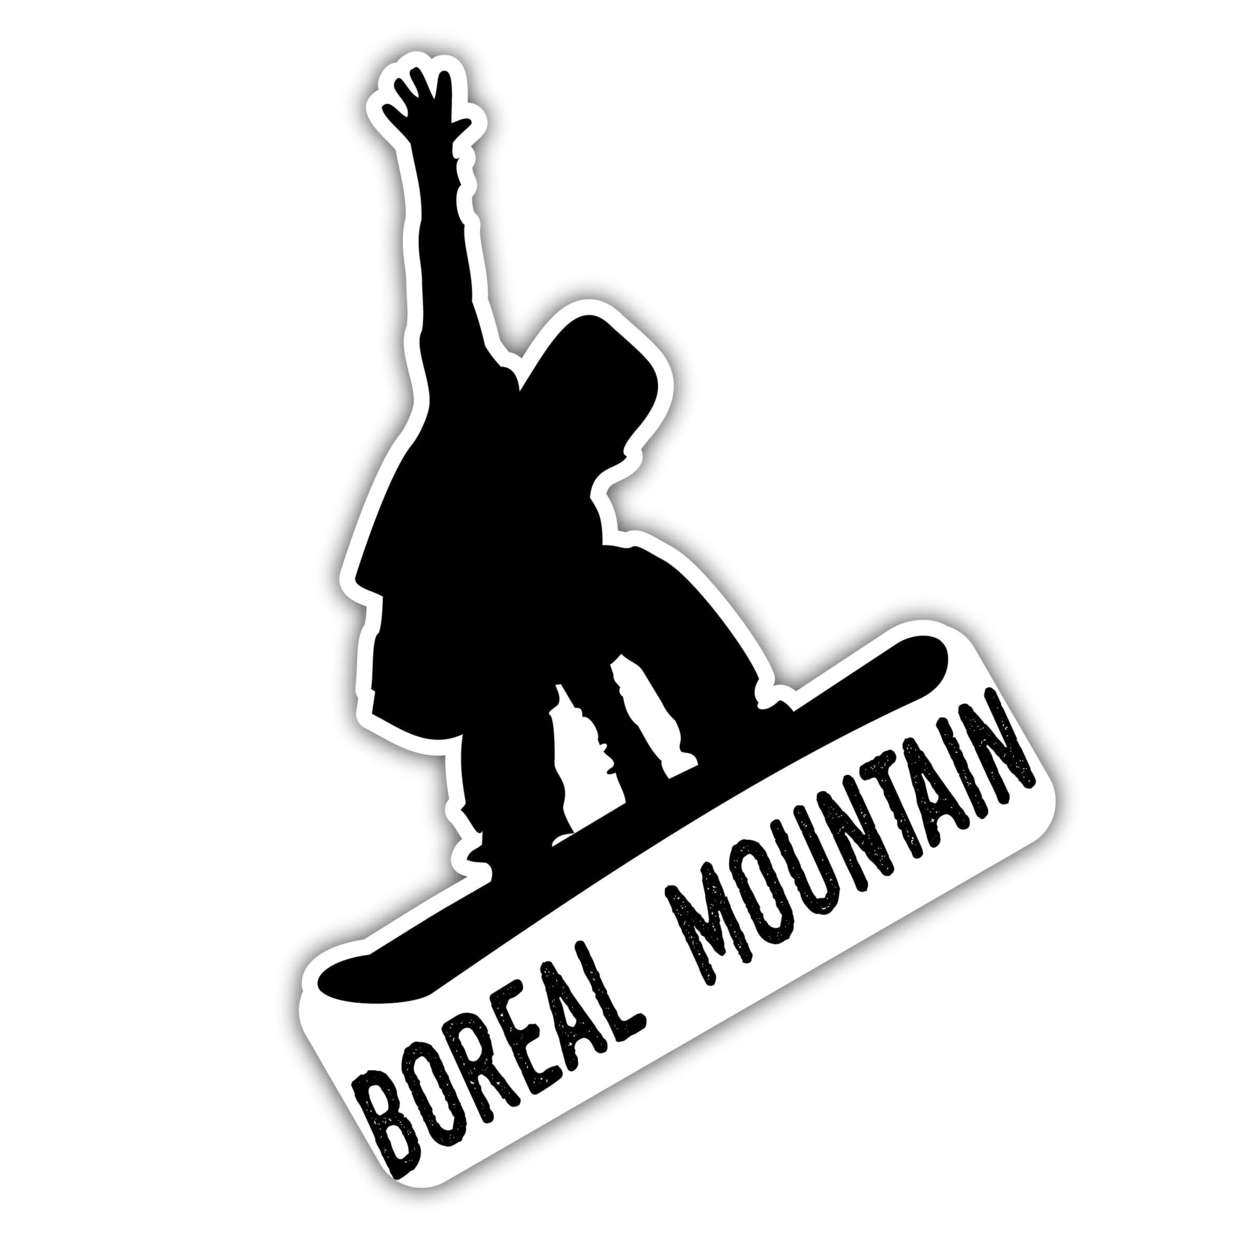 Boreal Mountain California Ski Adventures Souvenir 4 Inch Vinyl Decal Sticker Board Design